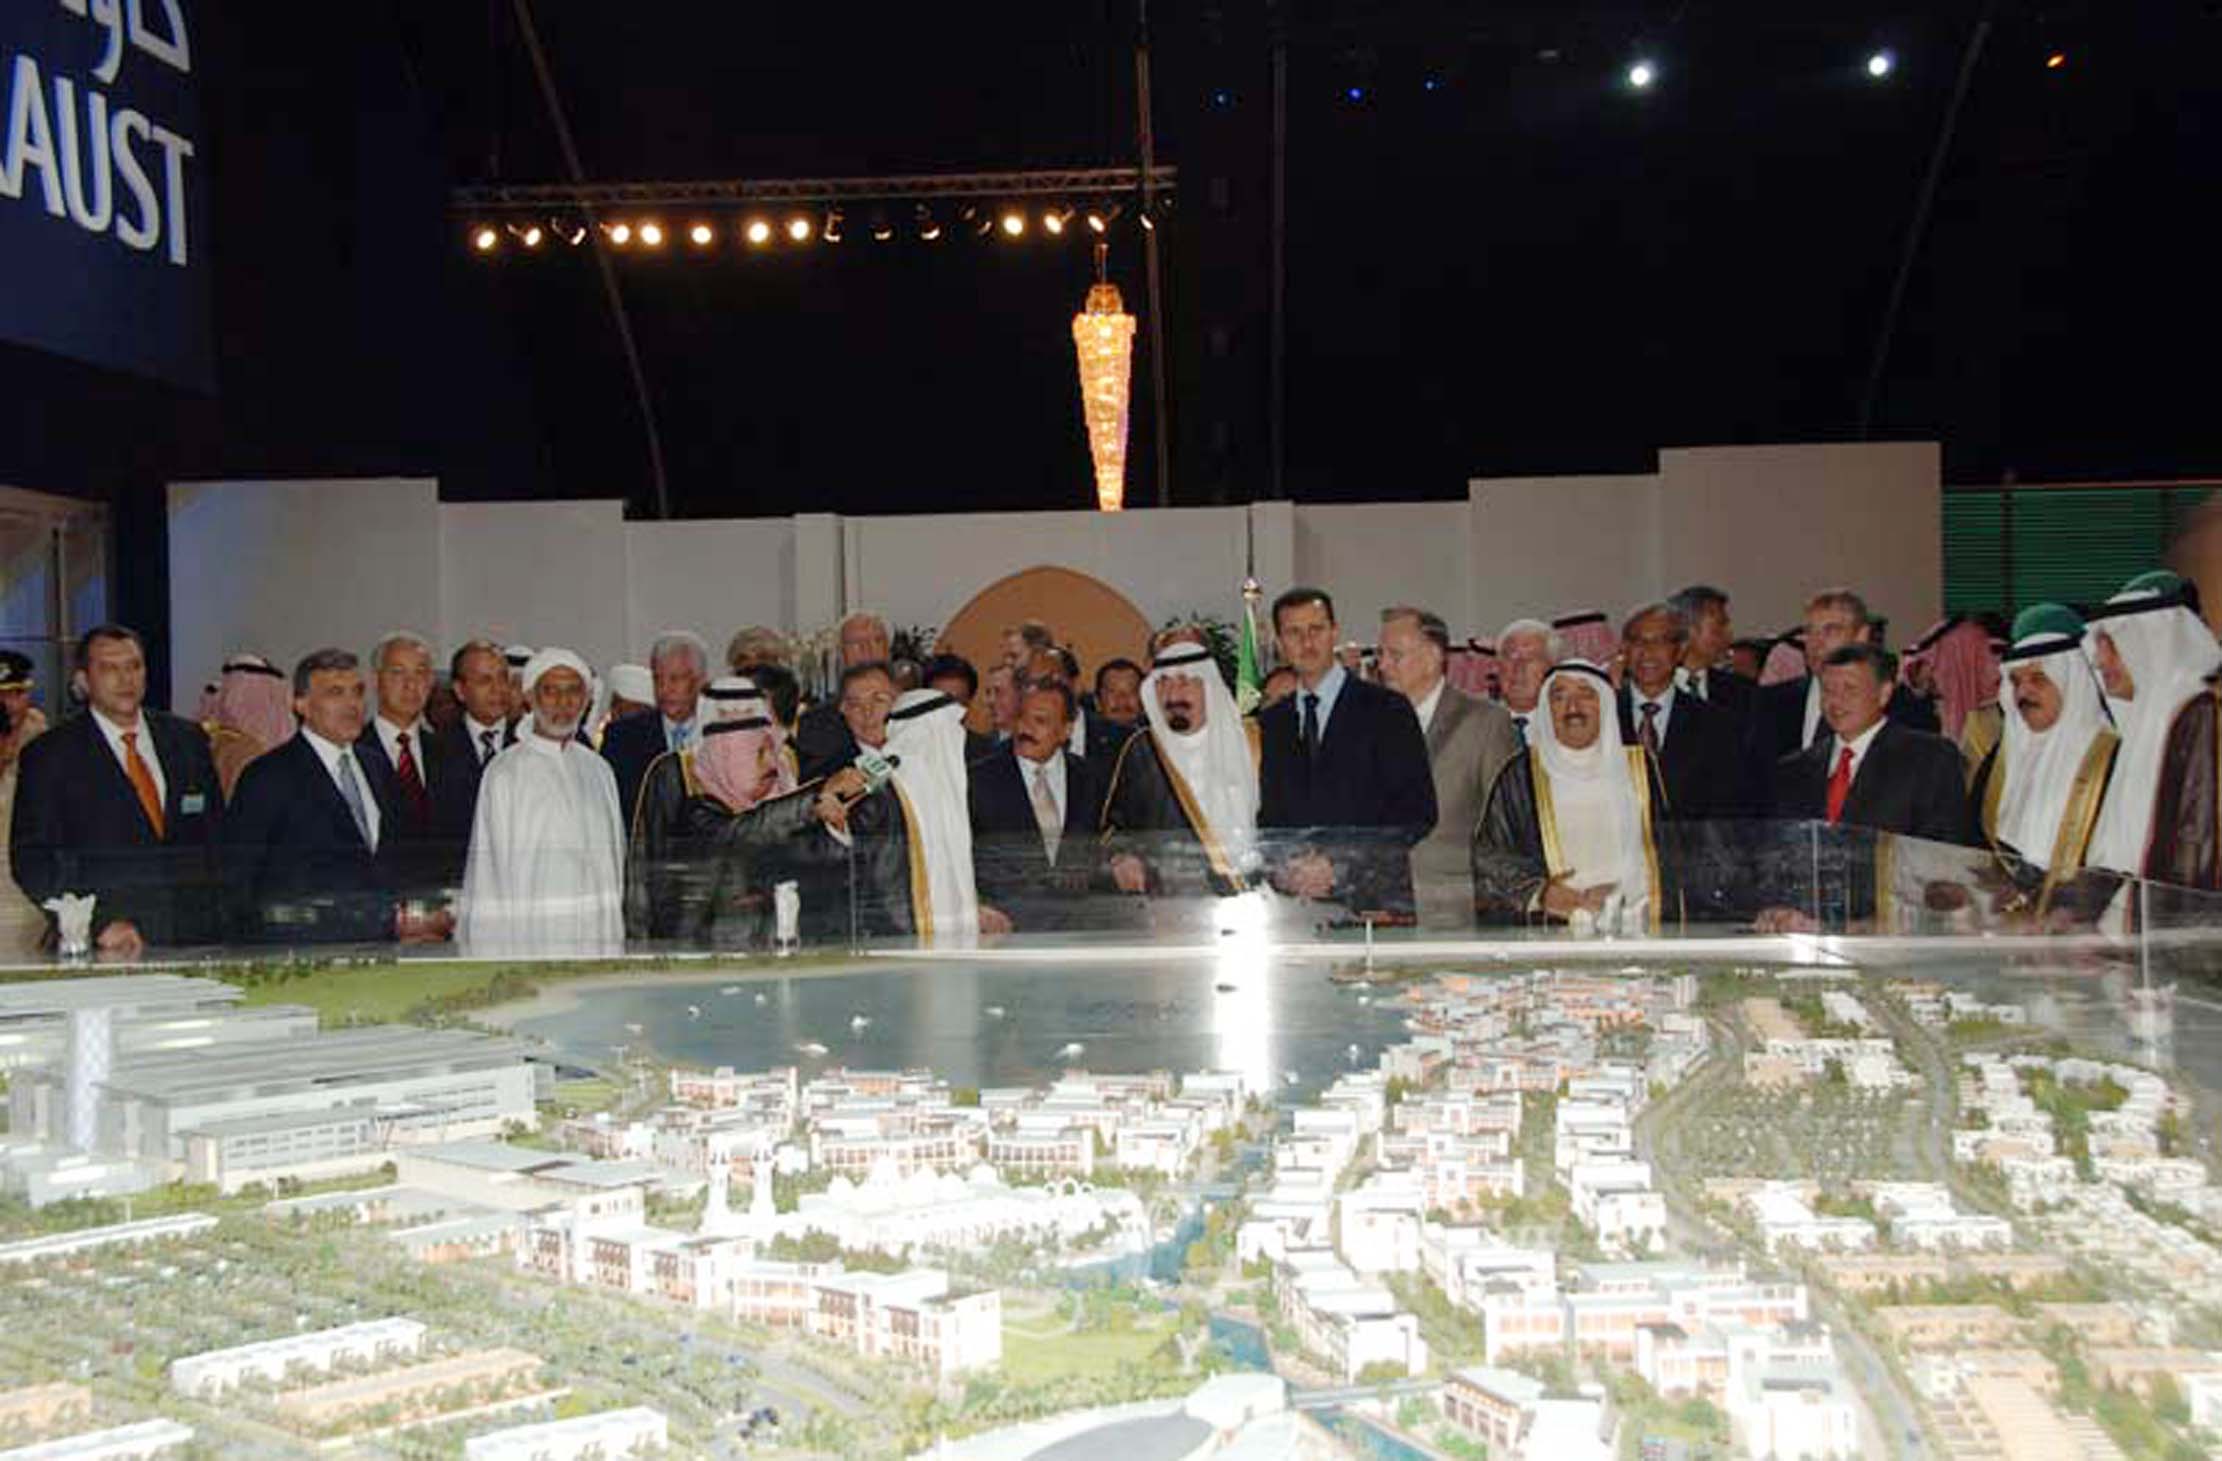 جدة: يشارك فخامته في حفل افتتاح جامعة الملك عبدالله للعلوم والتقنية في المملكة العربية السعودية، 23-09-2009